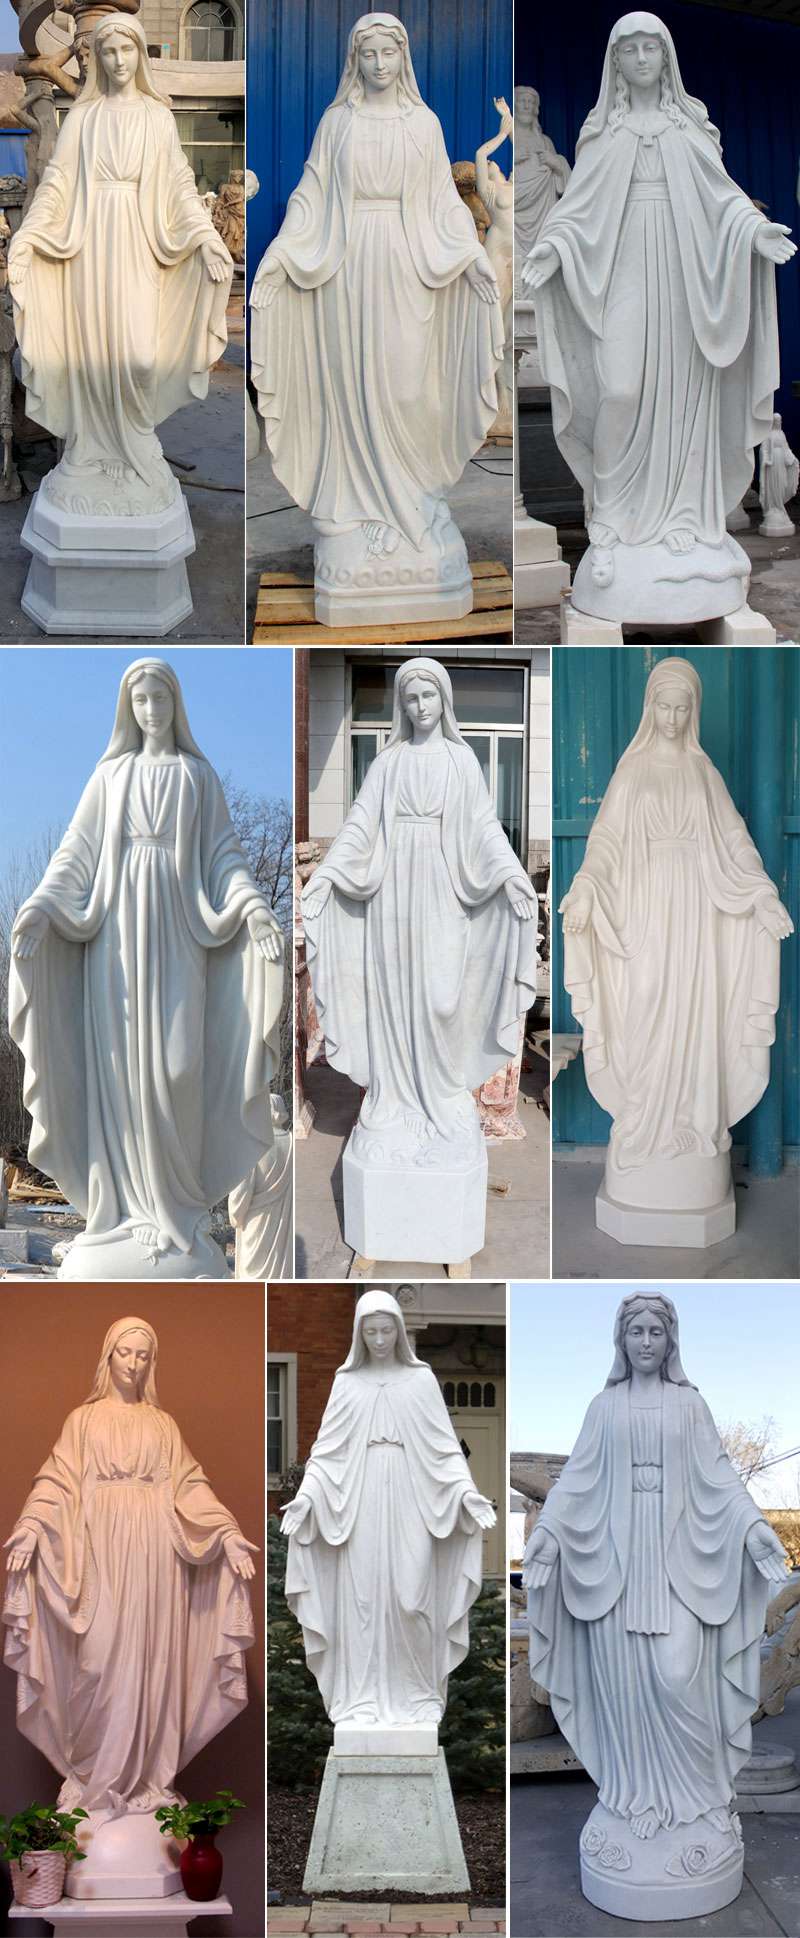 more statue